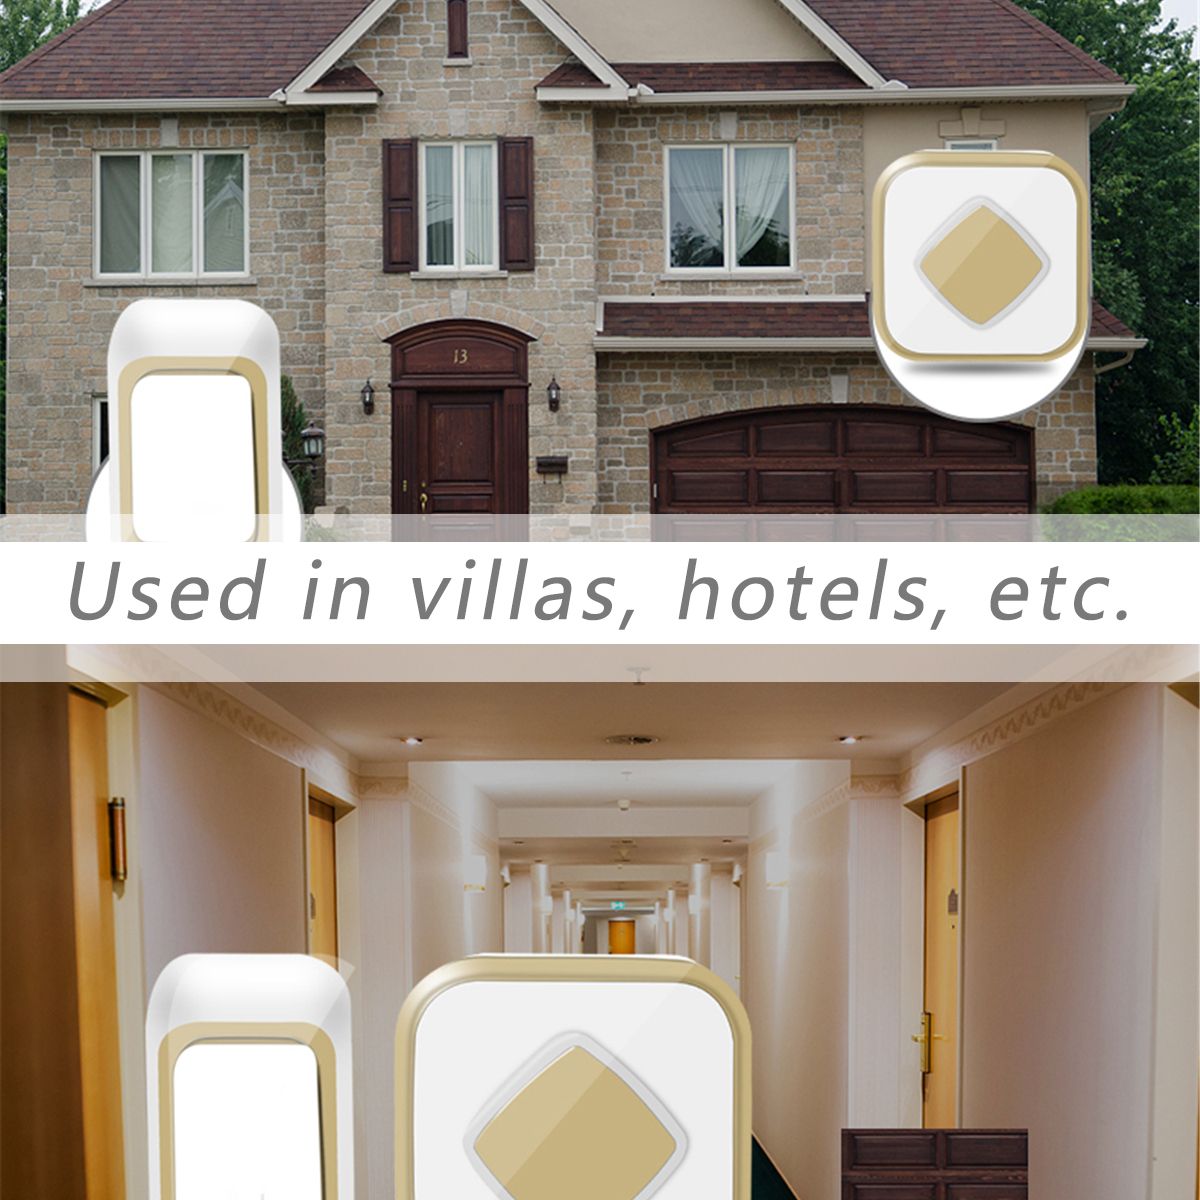 Wireless-Doorbell-Waterproof-Transmitter--Receiver-Home-Wall-Doorbell-60-Chimes-1757949